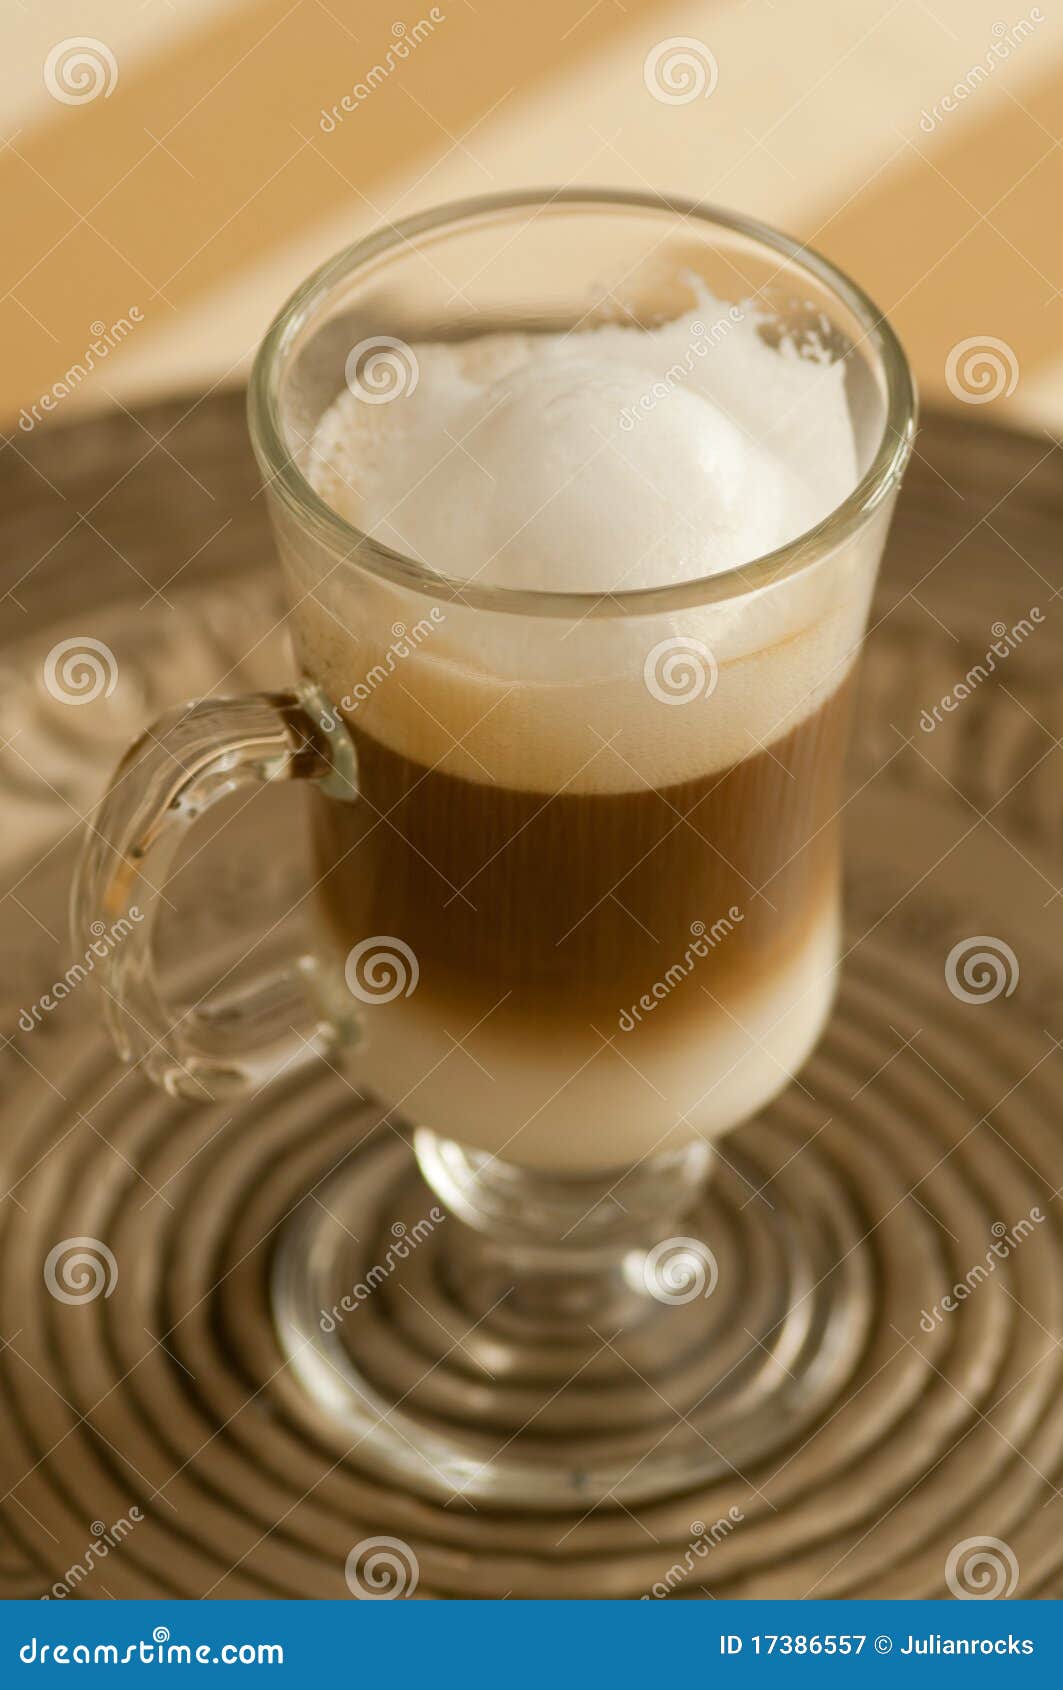 caffe latte macchiato